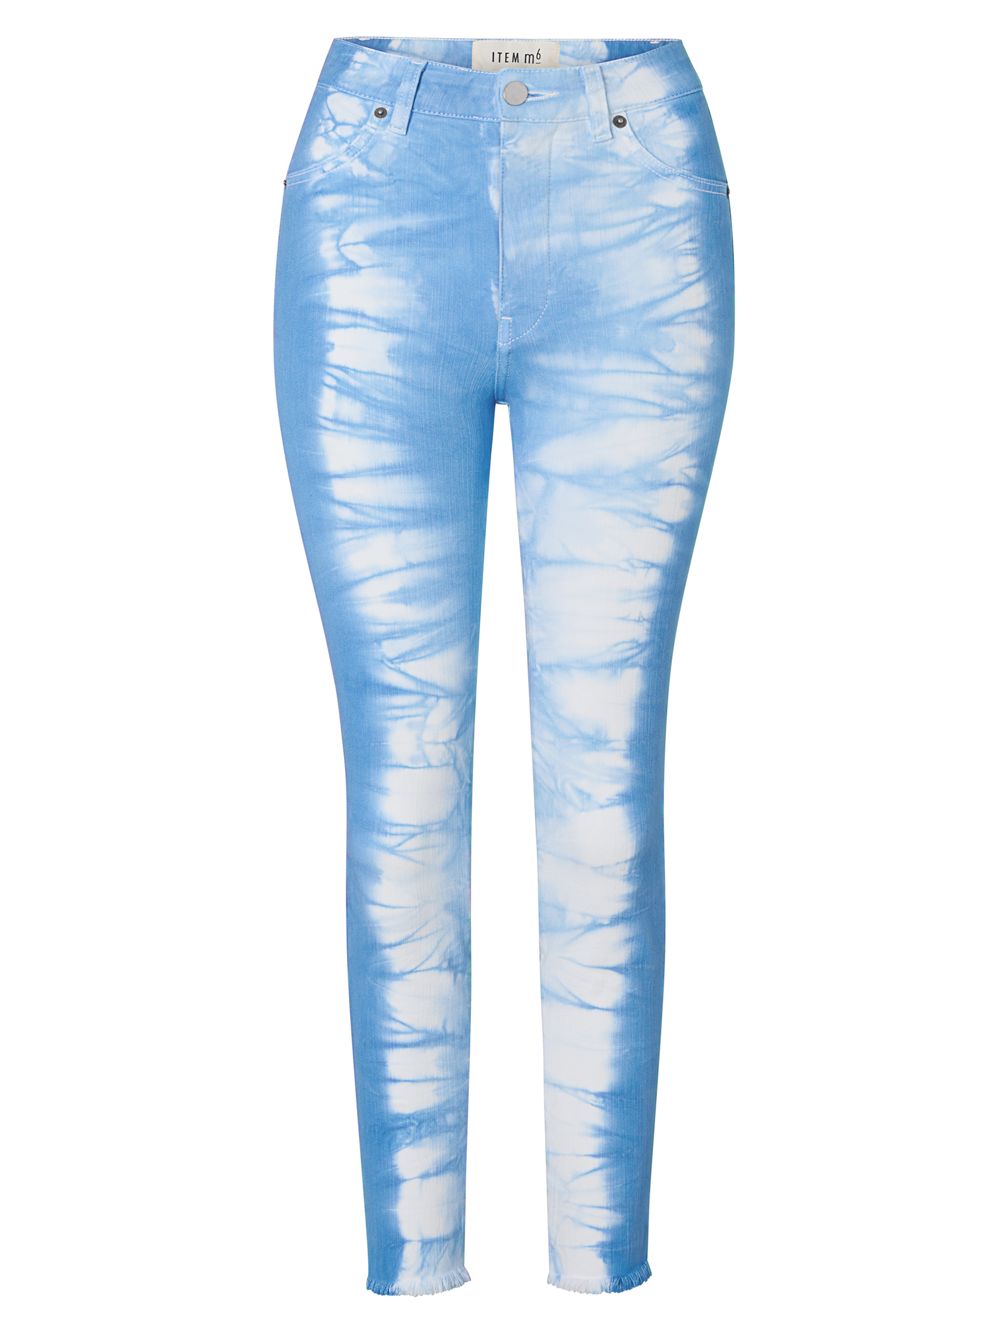 Окрашенные вручную укороченные джинсы до щиколотки ITEM m6, синий цена и фото